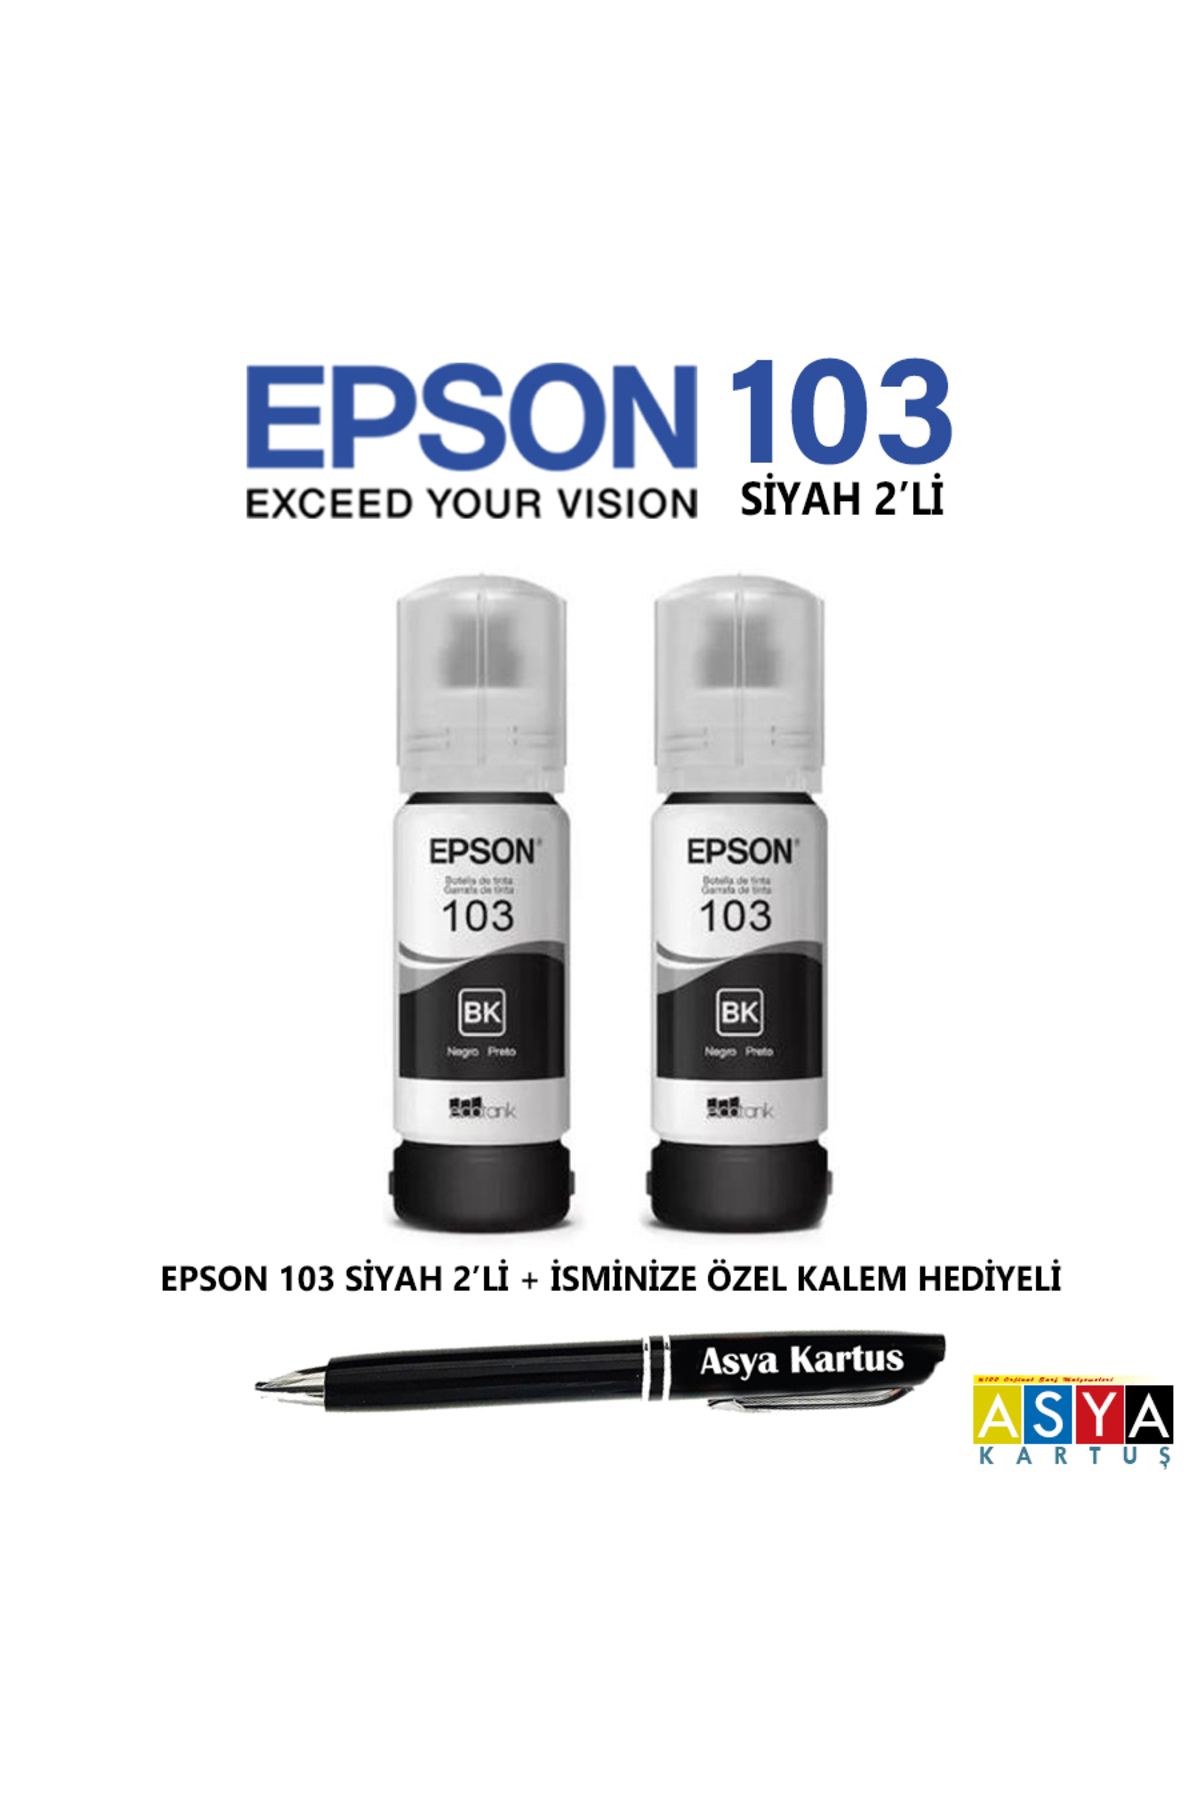 Epson 103 siyah mürekkep kartuşu, Epson L3251 yazıcı uyumlu 2'li